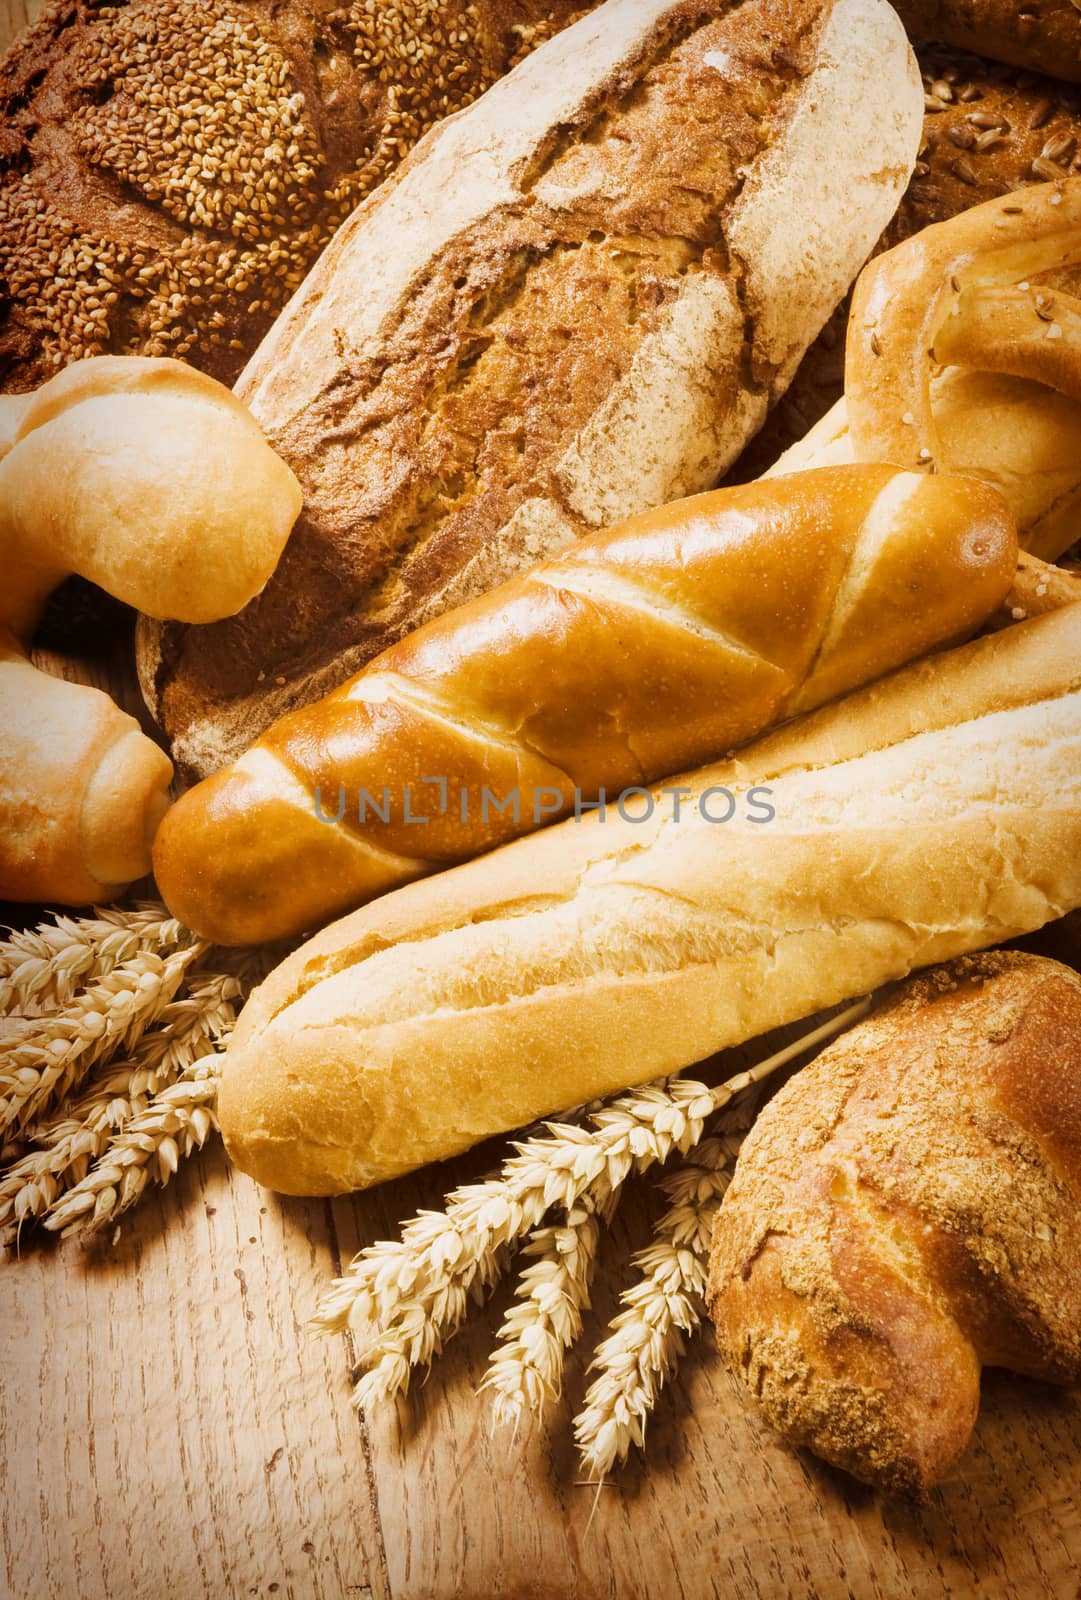 Various types of bread - still life